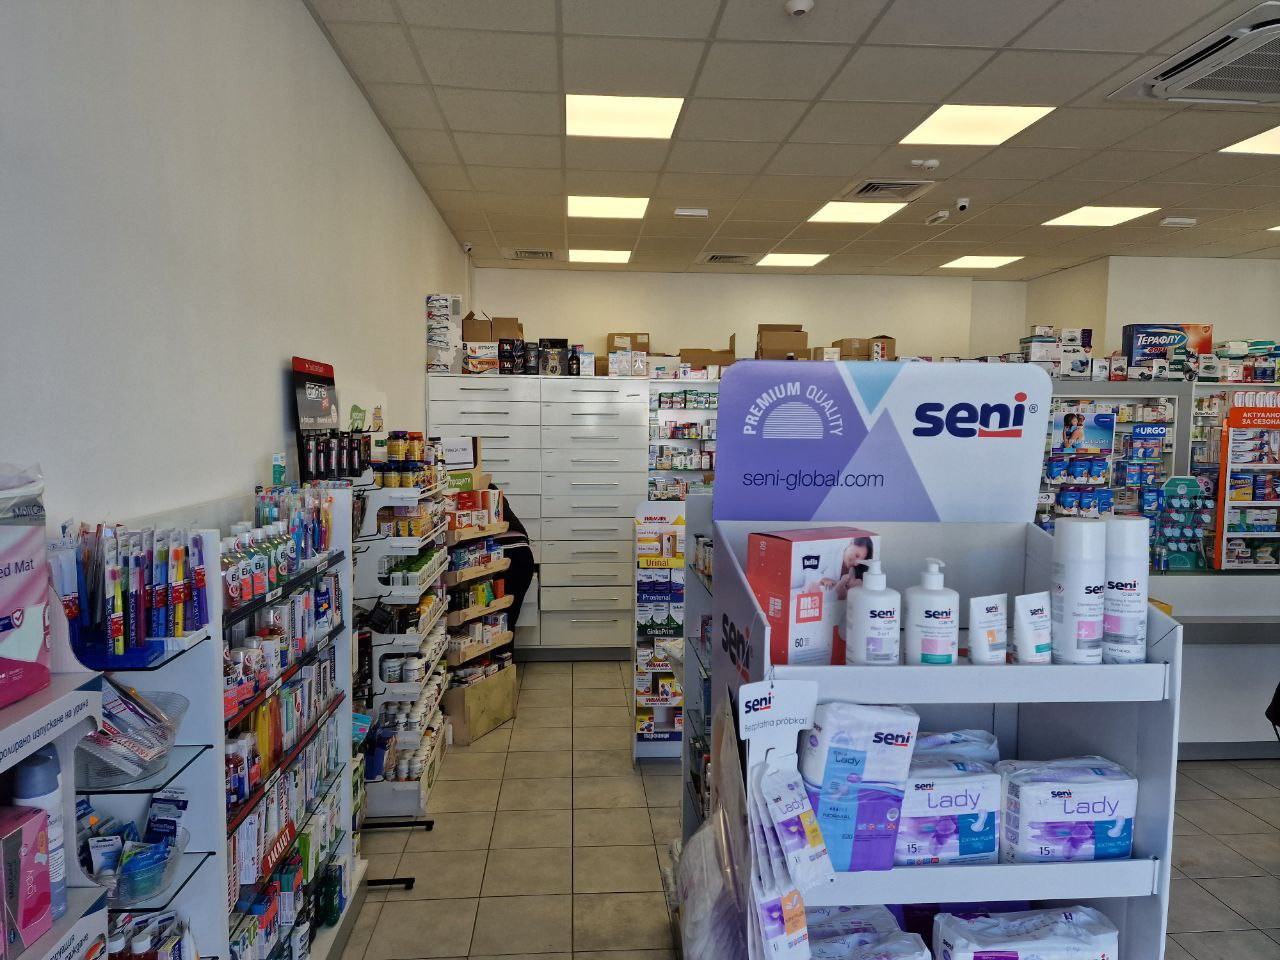 Нова аптека “Стела” отвори врати на бул. “Ботевградско шосе” в столицата, обещавайки атрактивни цени, професионално обслужване и разнообразие от най-добрите продукти на пазара - Снимка 3